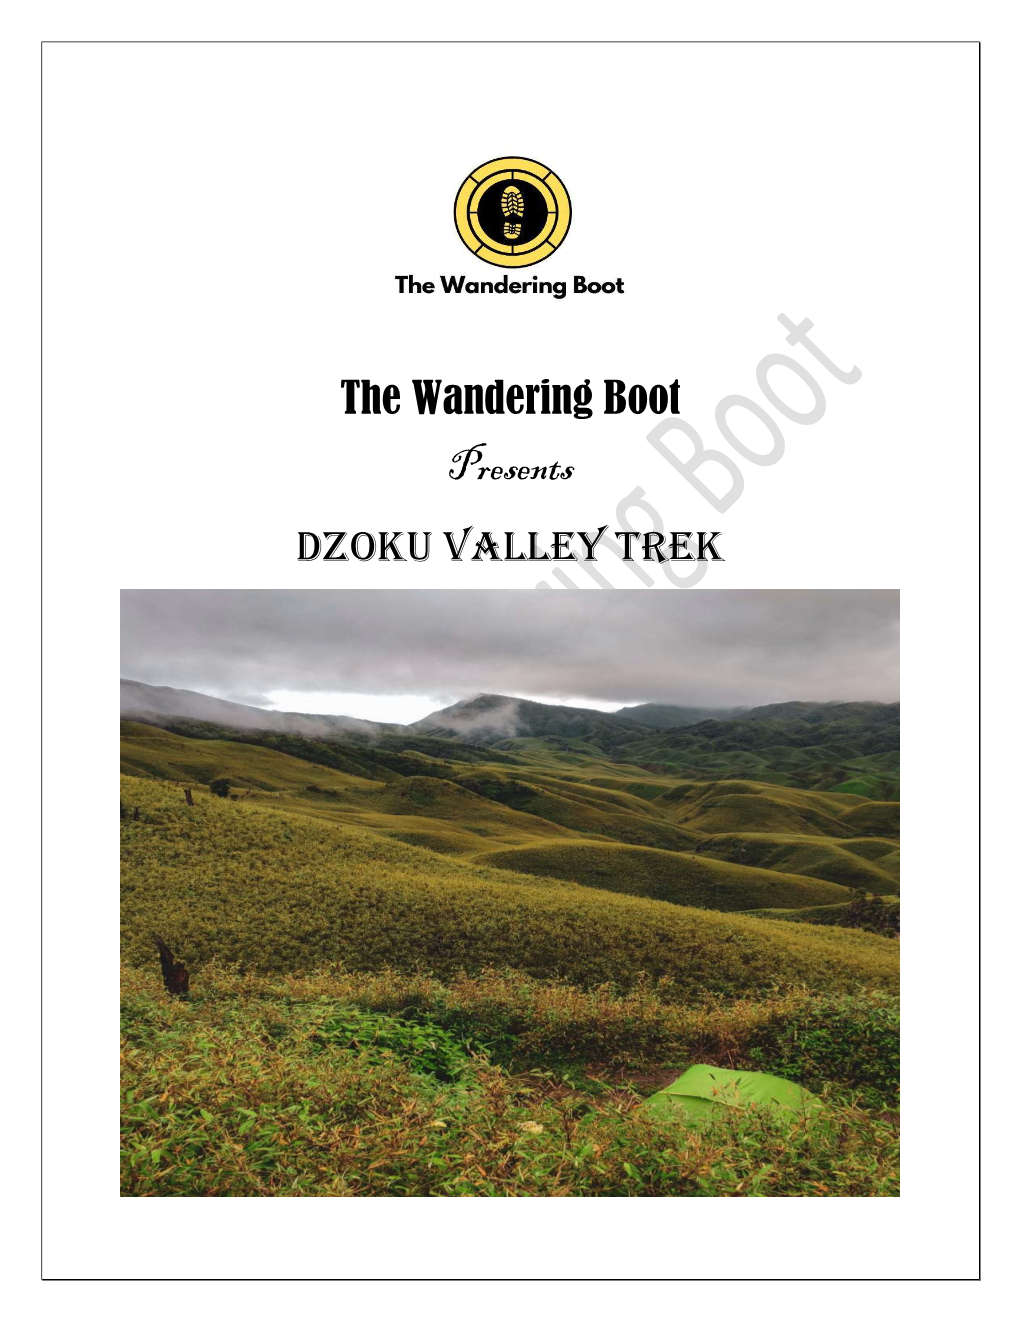 The Wandering Boot Presents Dzoku Valley Trek